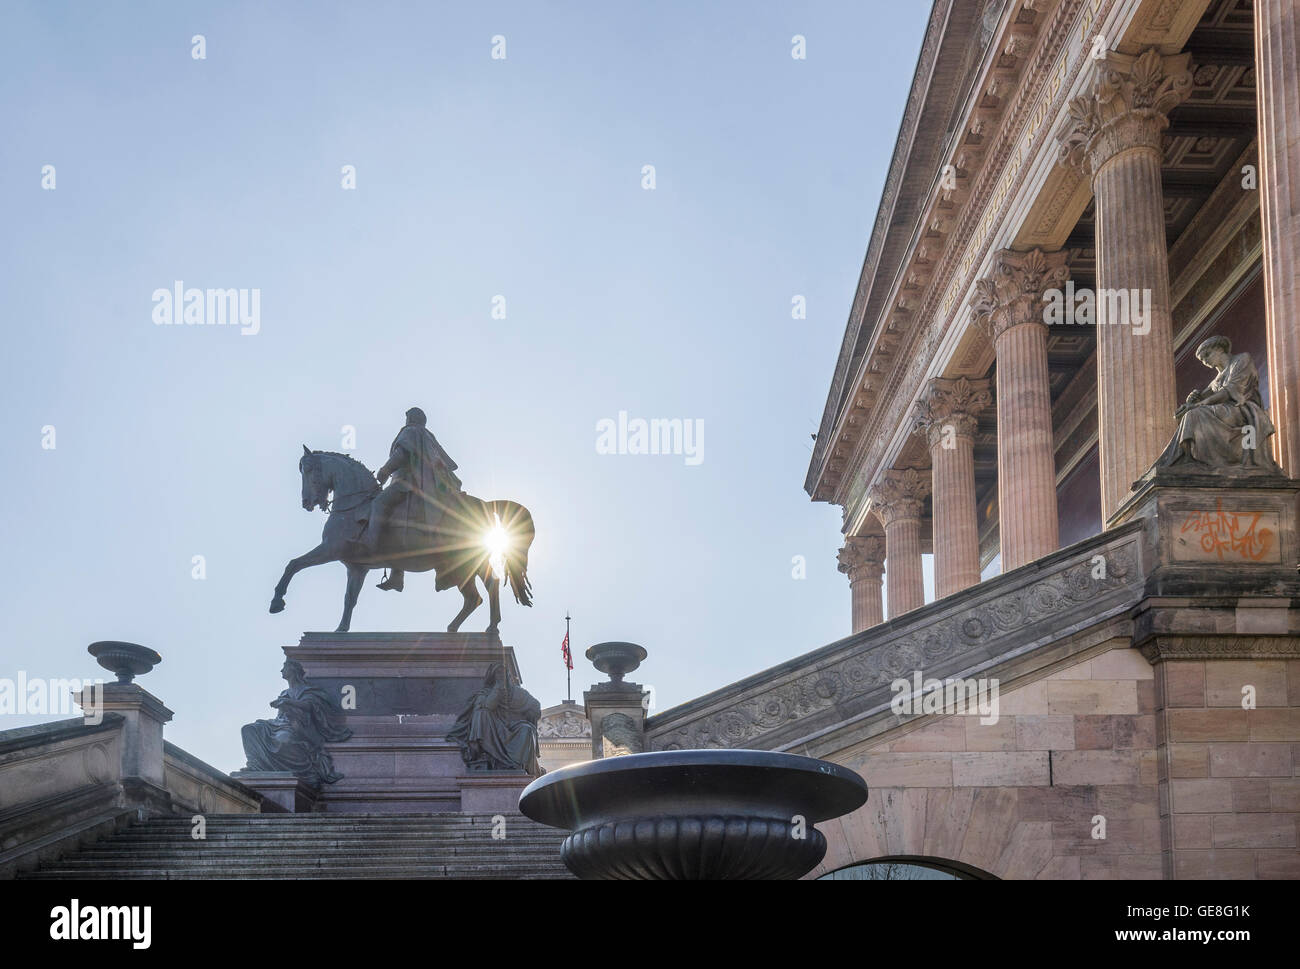 Germania, Berlino, statua equestre nella parte anteriore della vecchia galleria nazionale Foto Stock